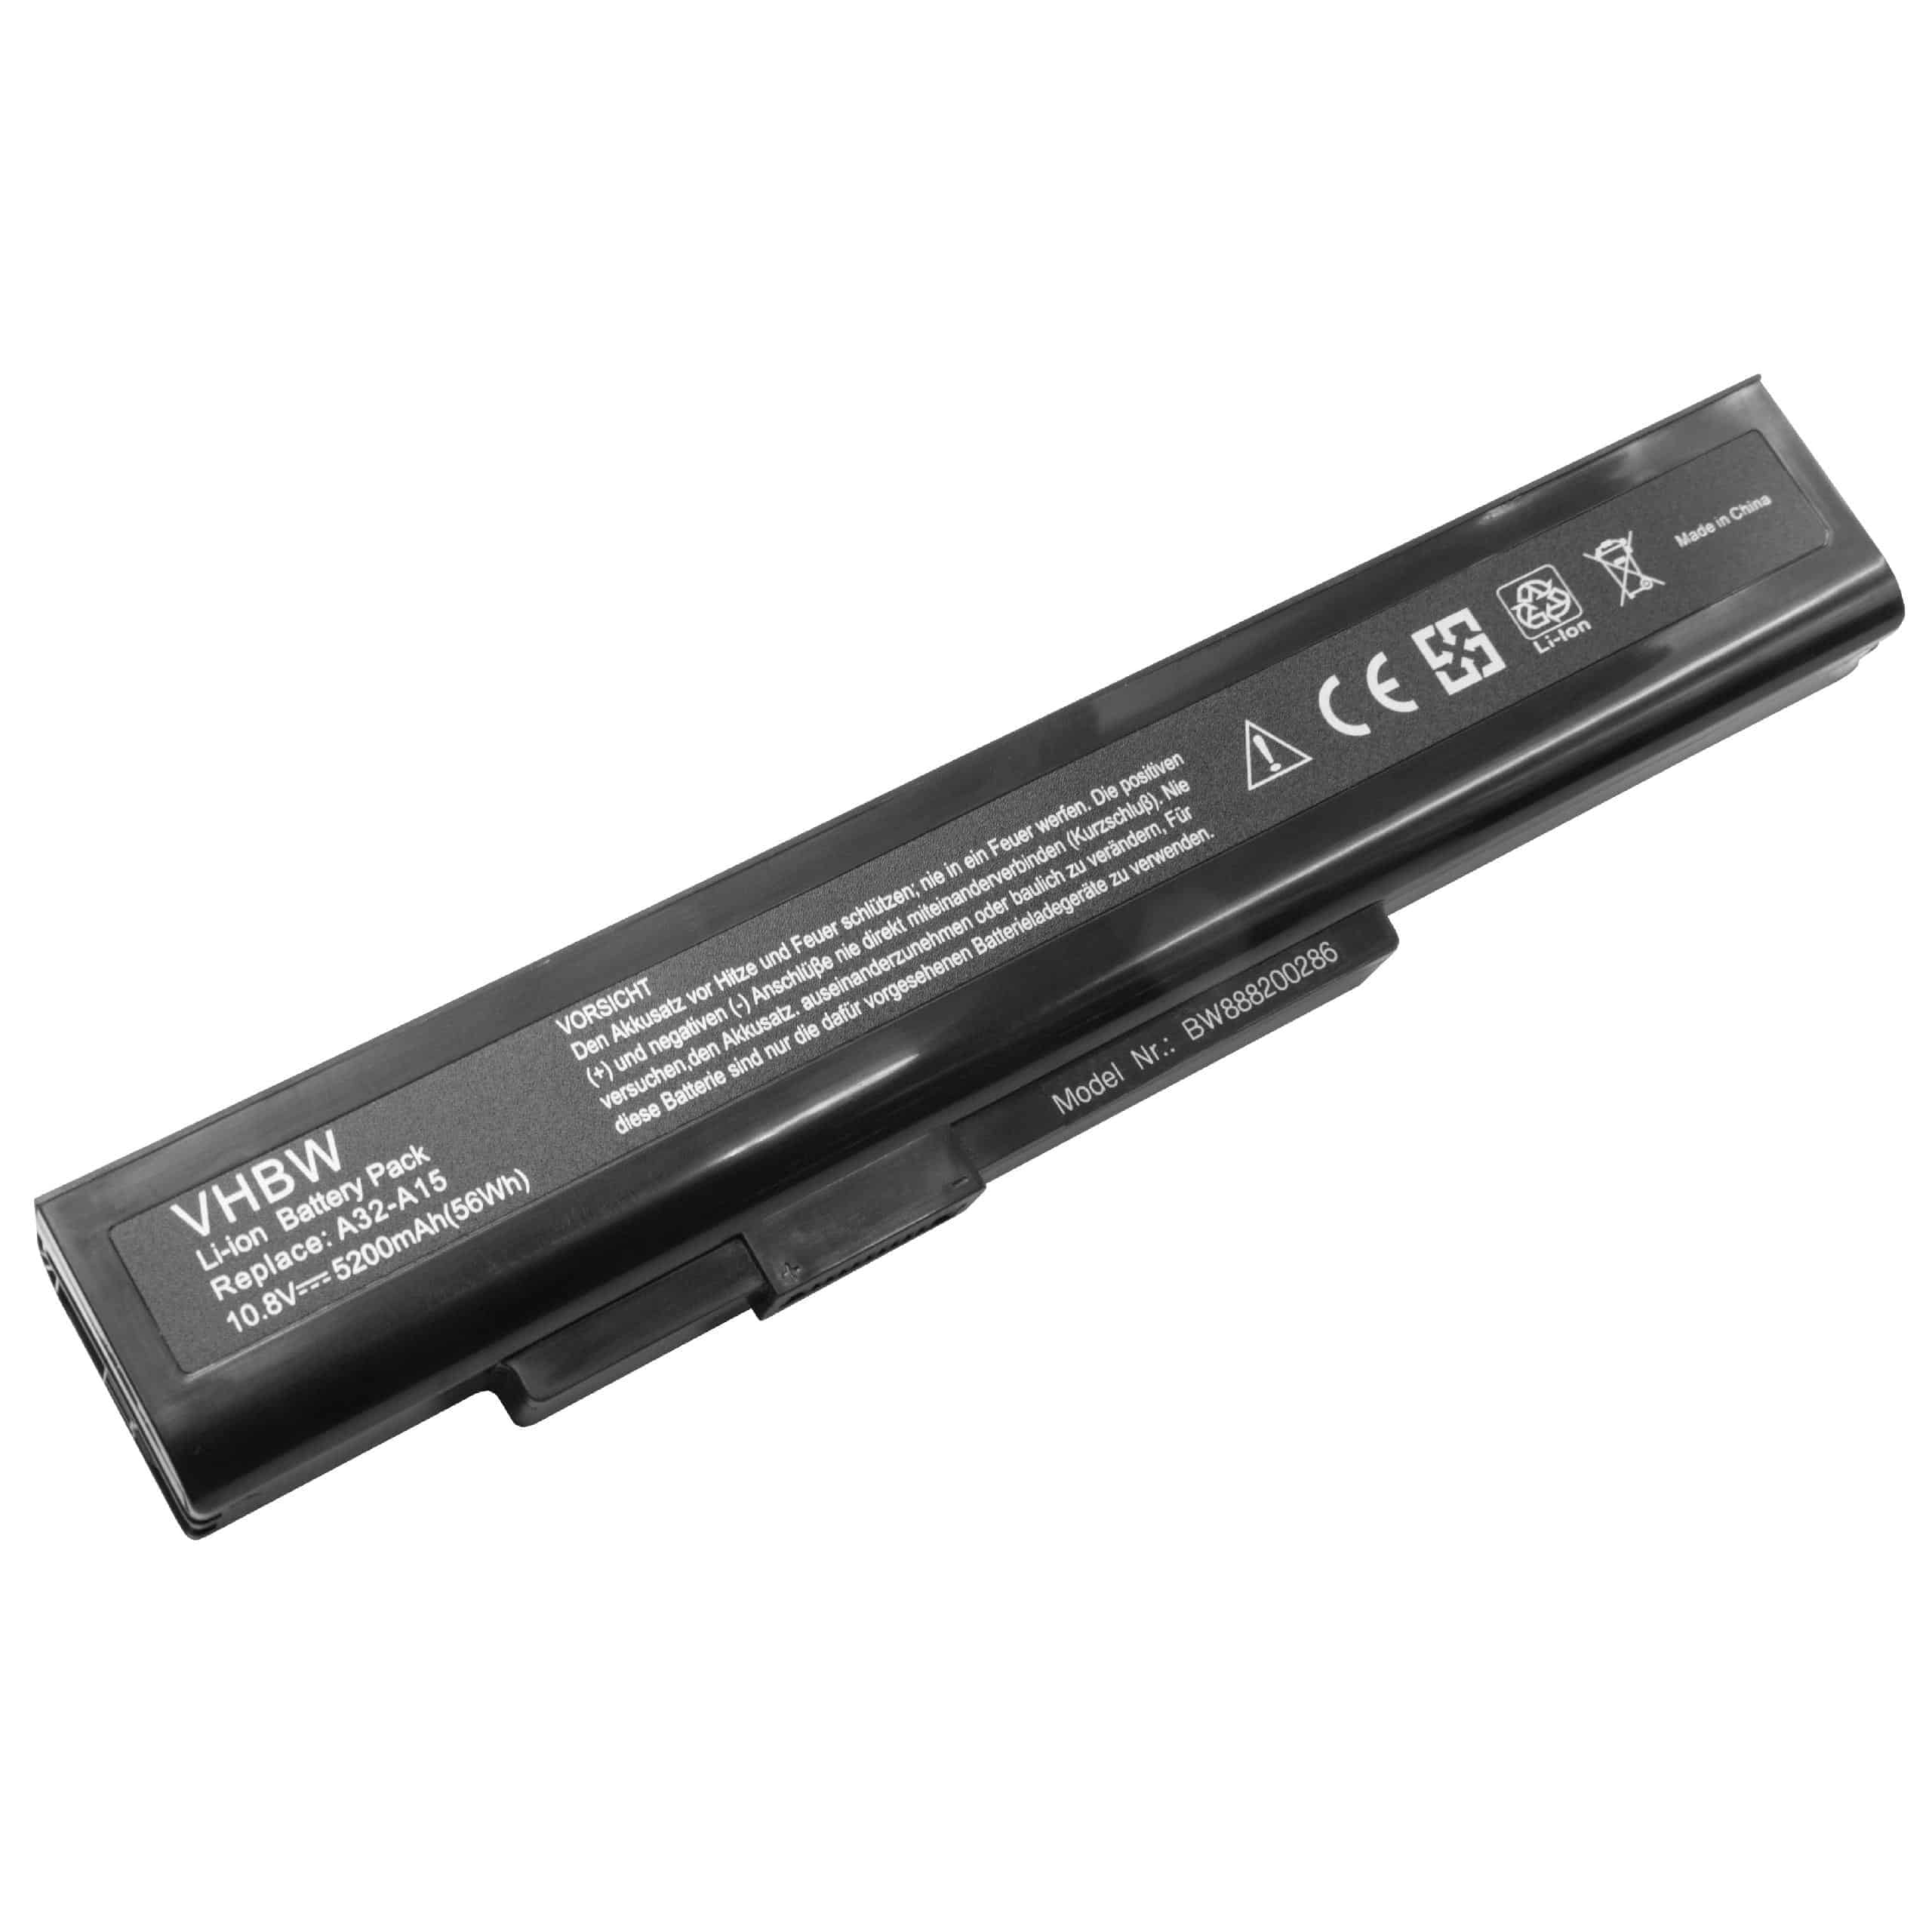 Batterie remplace Medion A32-A15, A41-A15, A42-A15 pour ordinateur portable - 5200mAh 10,8V Li-ion, noir